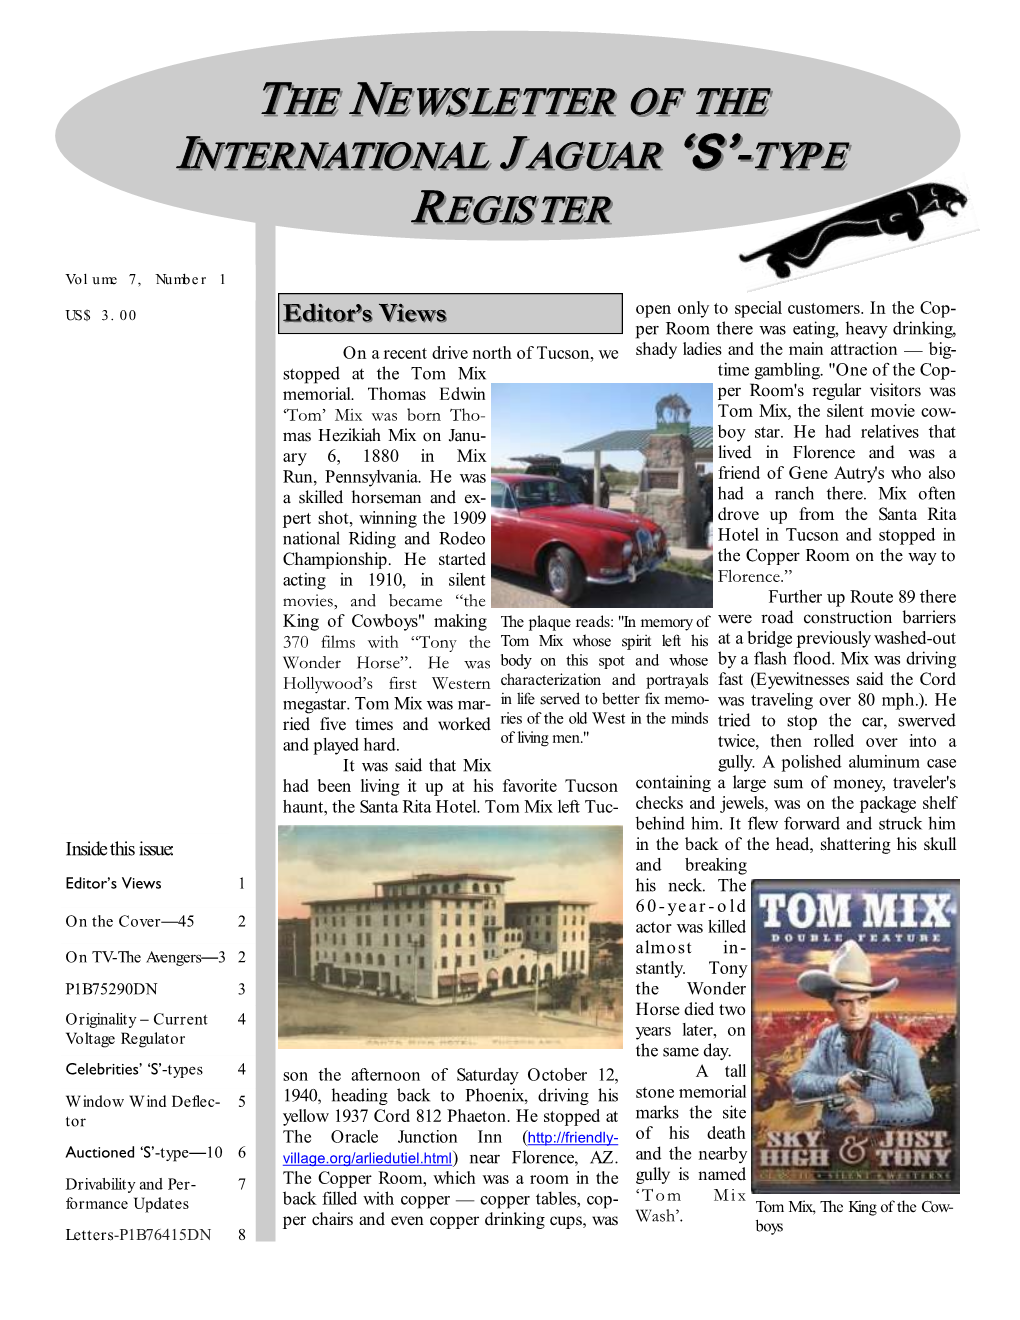 The Newsletter of the International Jaguar